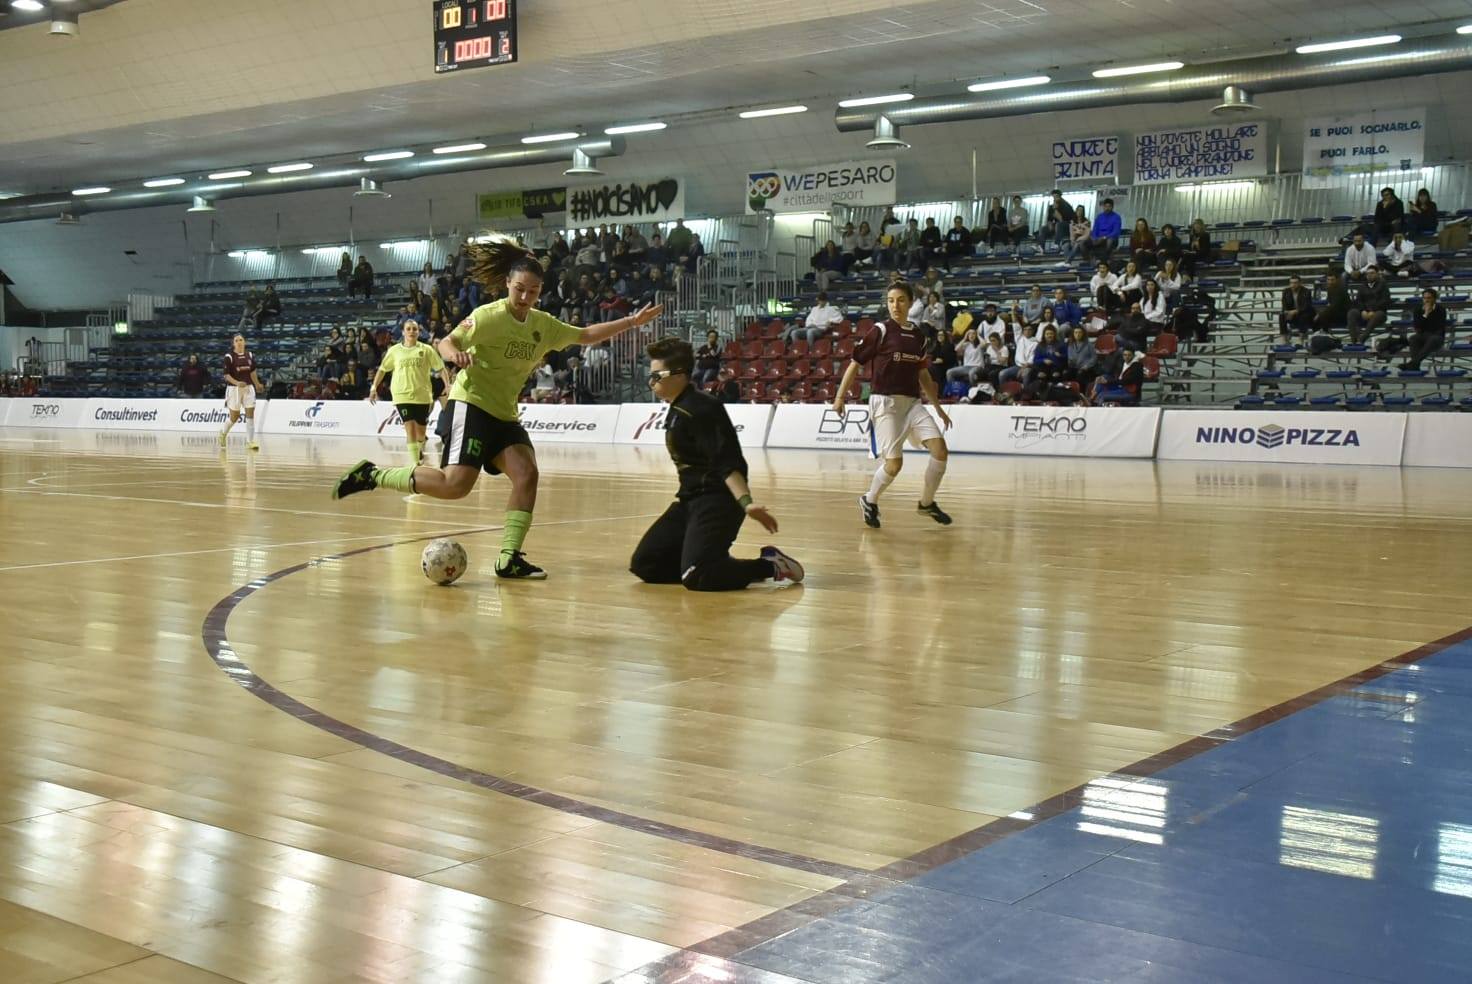 http://www.futsalprandone.com/www.futsalprandone.com/home/wordpress/wp-content/uploads/2019/07/Futsal-Prandone-Campione-regionale-marche.jpg